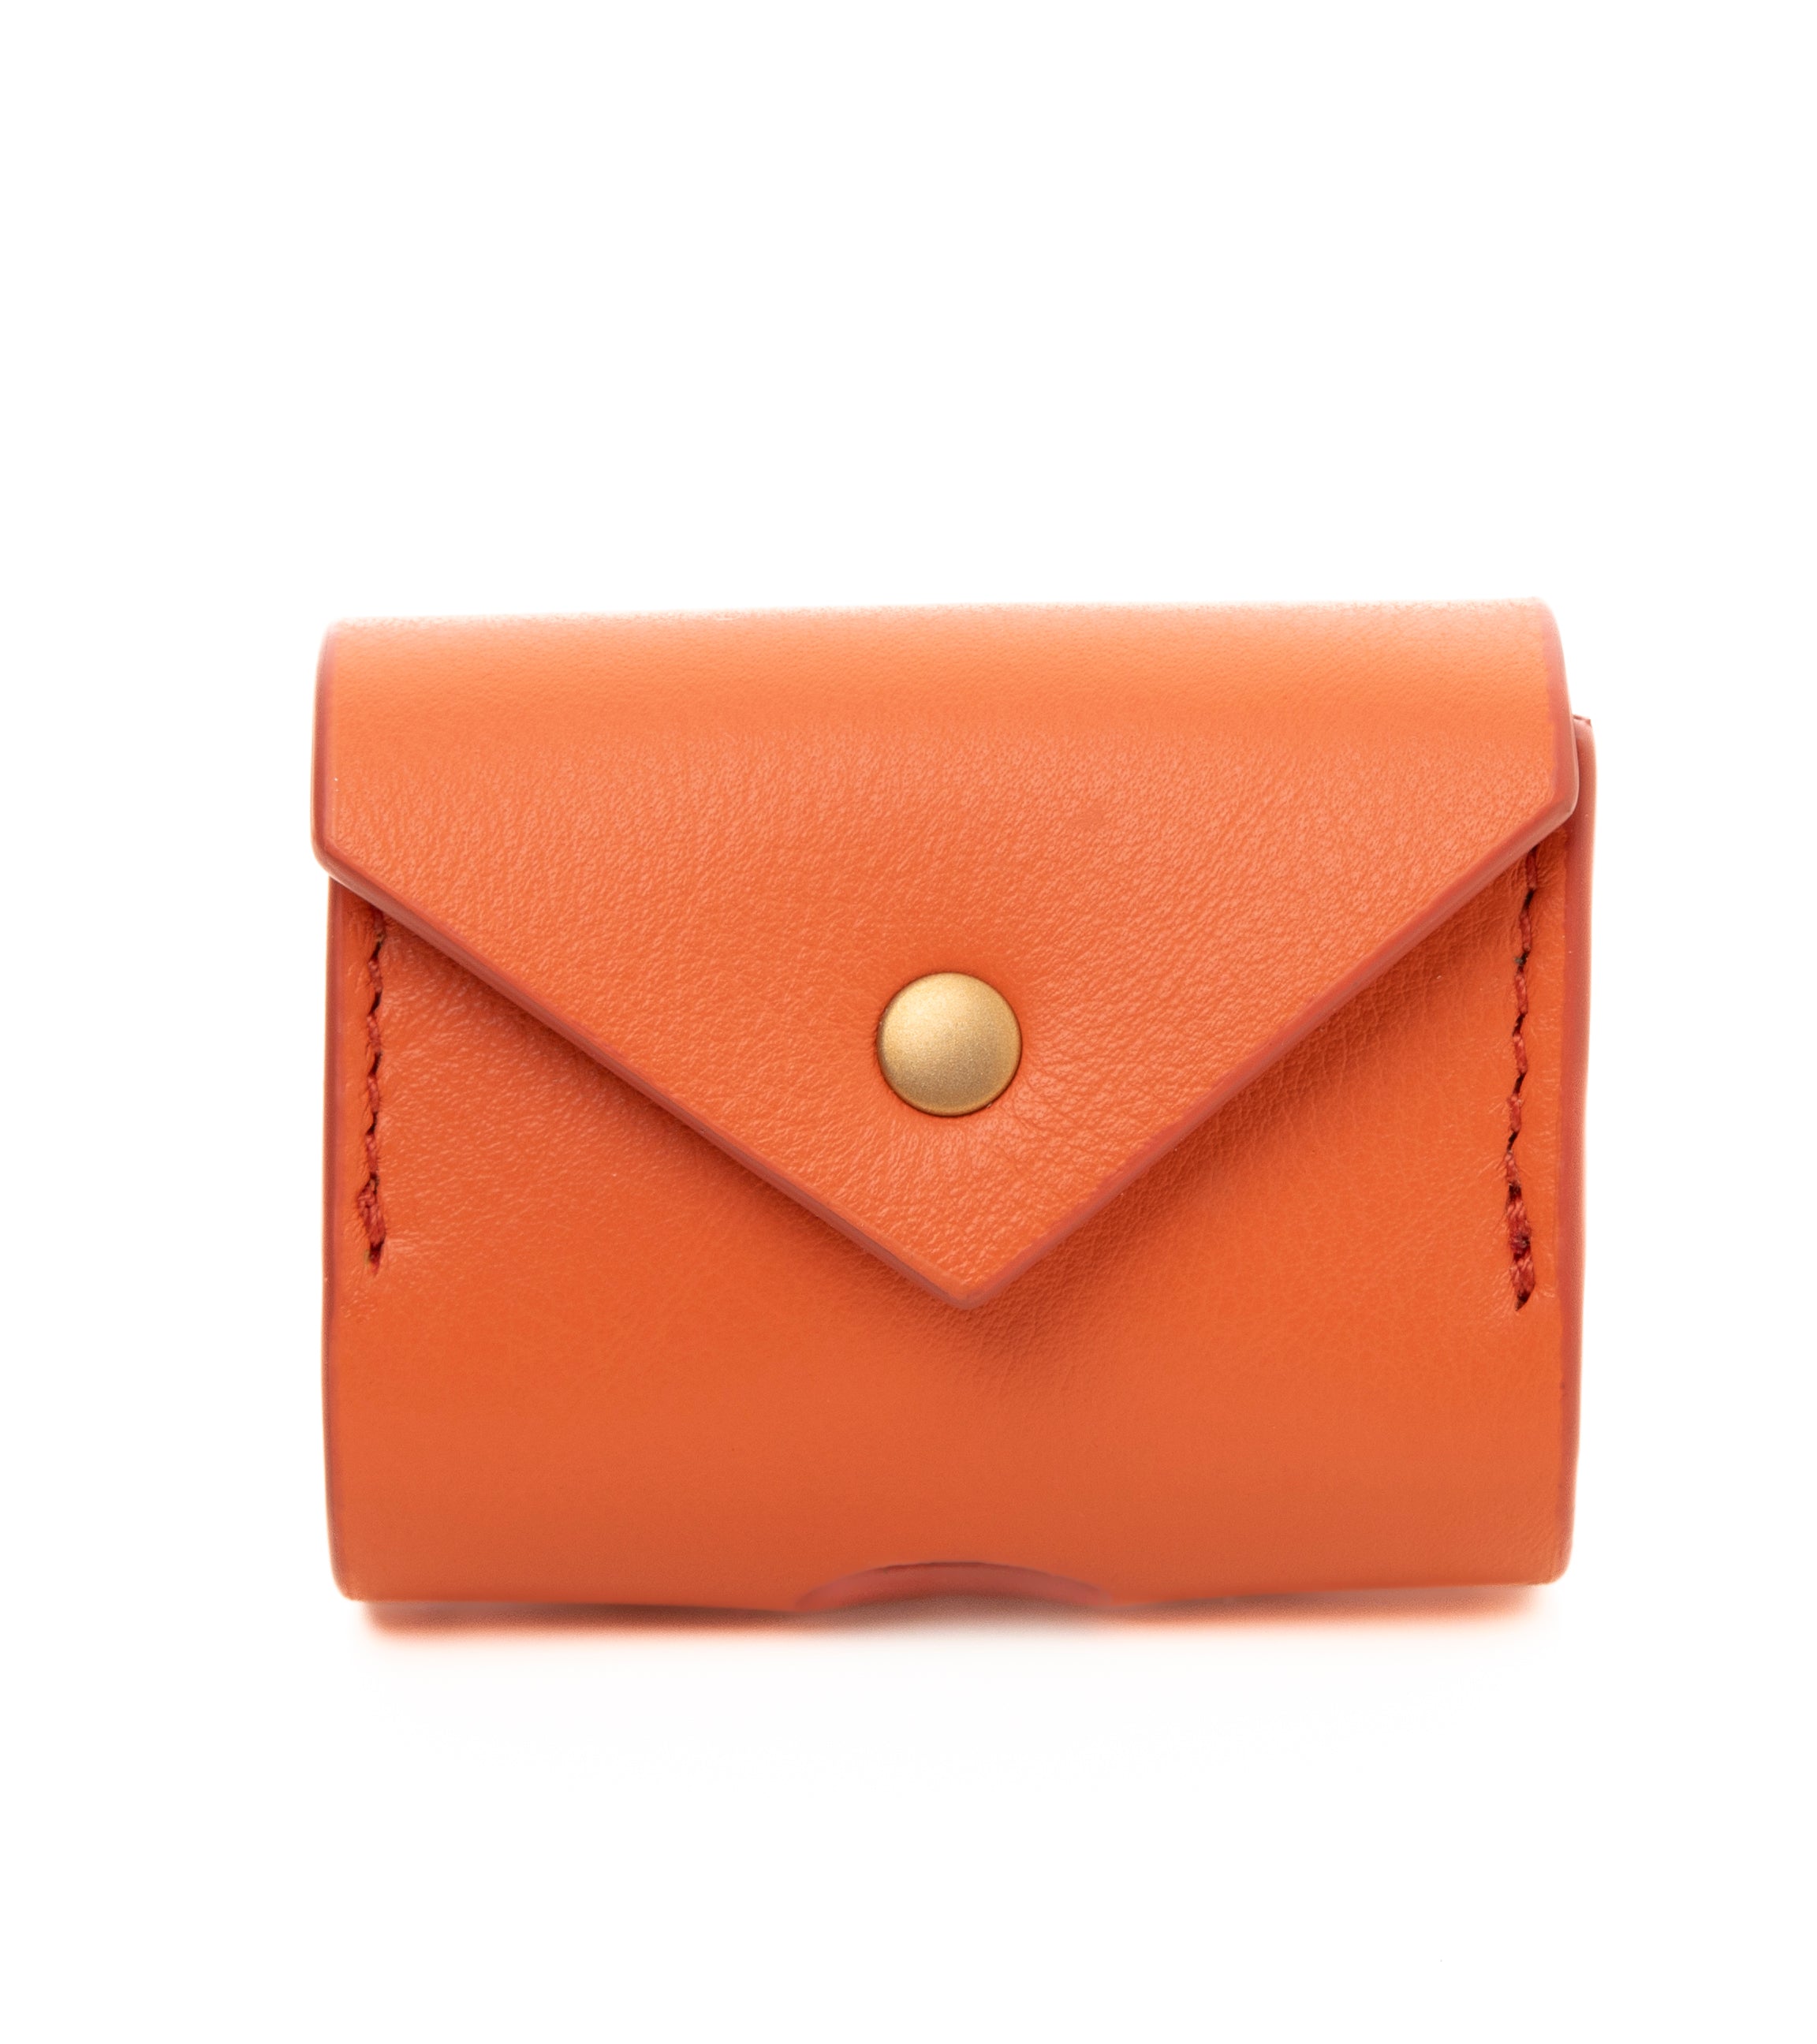 orange-leather-poop-bag-holder.jpg